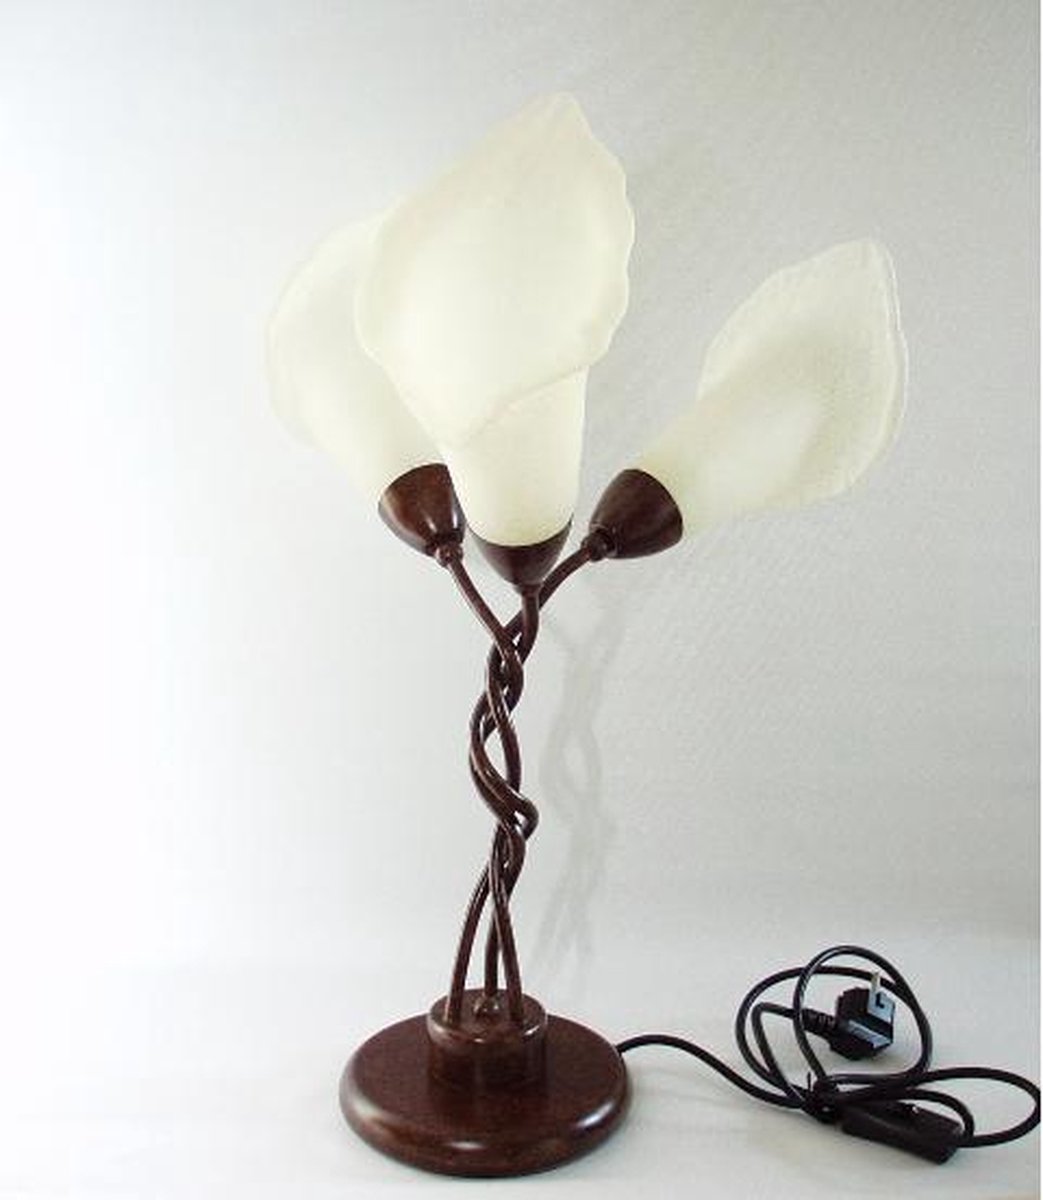 Staanlamp - 52 cm hoog - decoratie - verlichting - glas